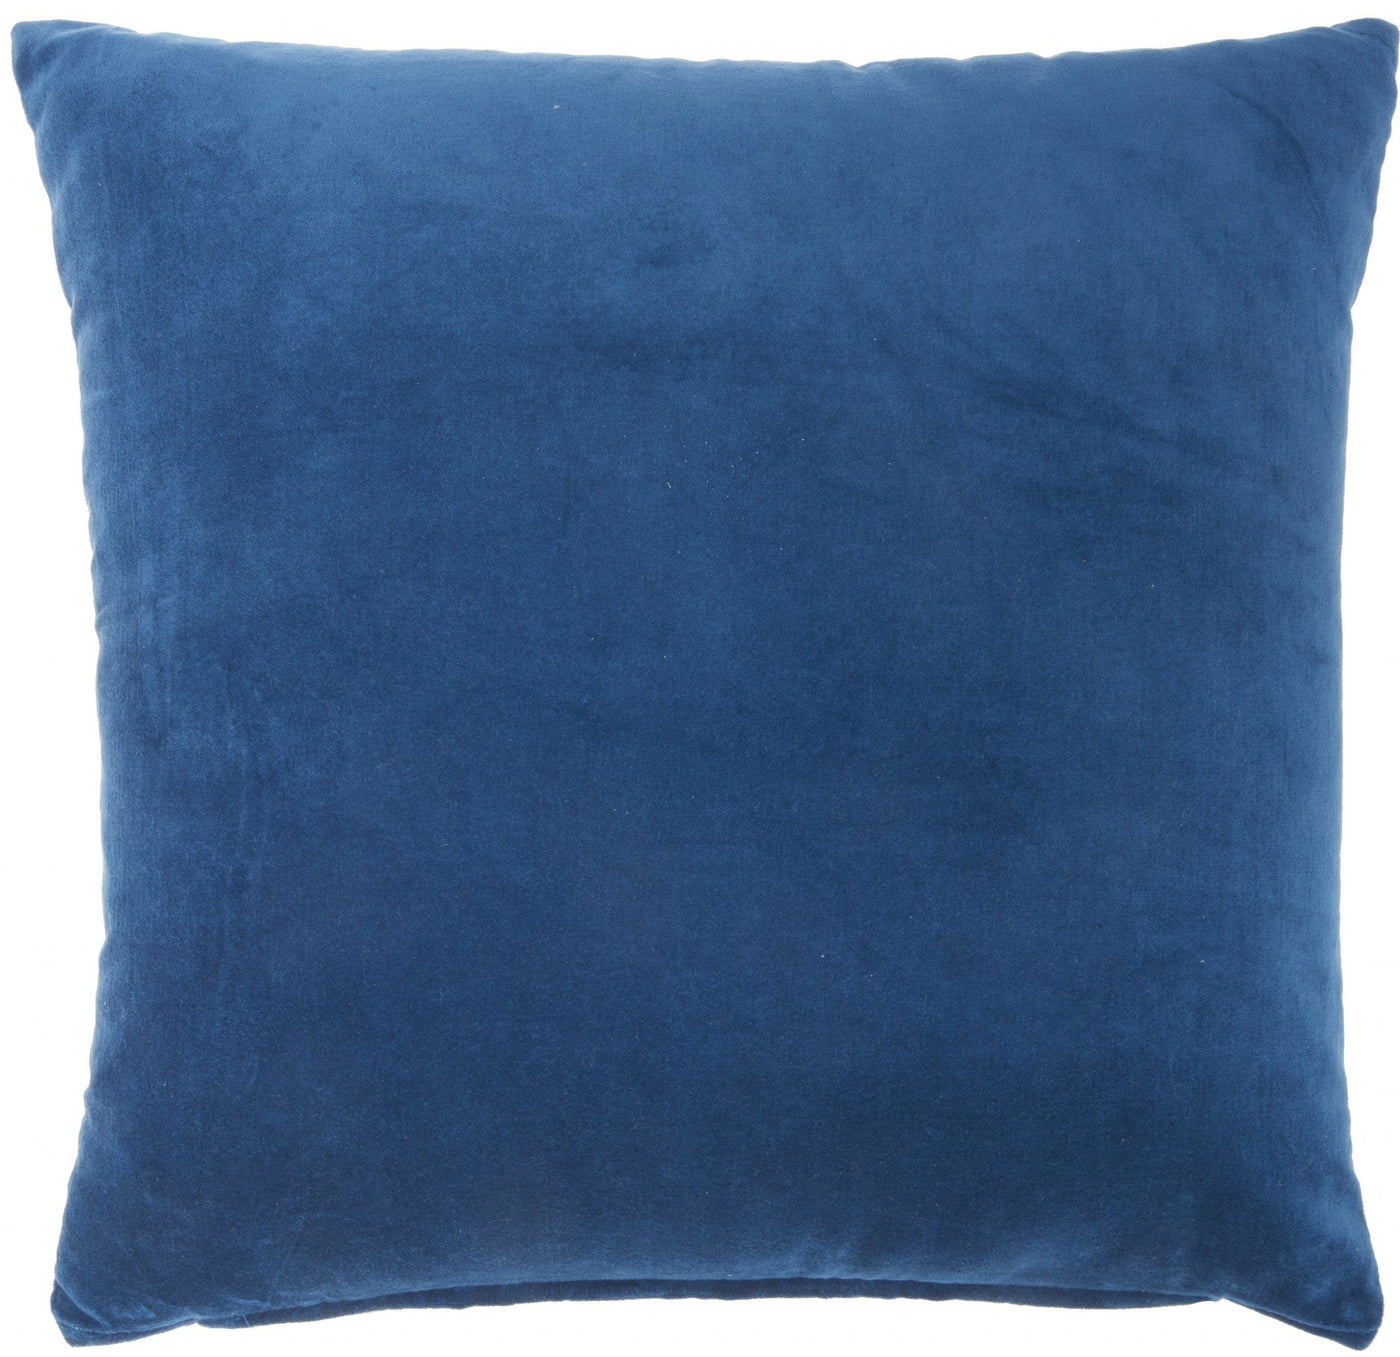 Navy Soft Velvet Accent Throw Pillow - Accent Throw Pillows